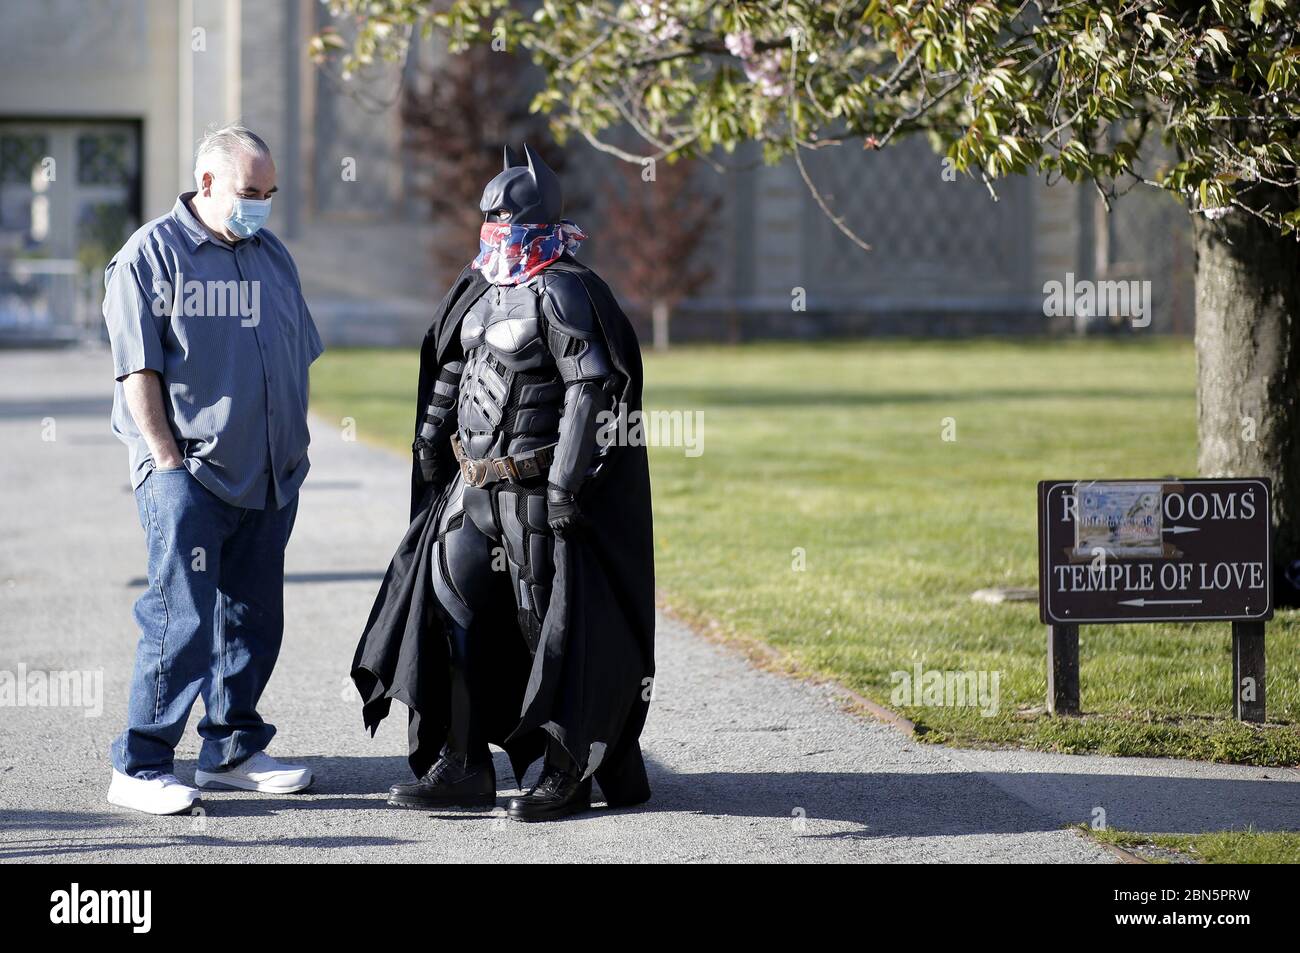 Un hombre vestido como superhéroe Batman lleva una máscara protectora  mientras habla con un hombre en telas sencillas mientras enfermeras,  funcionarios electos y miembros de la comunidad se reúnen para conmemorar el